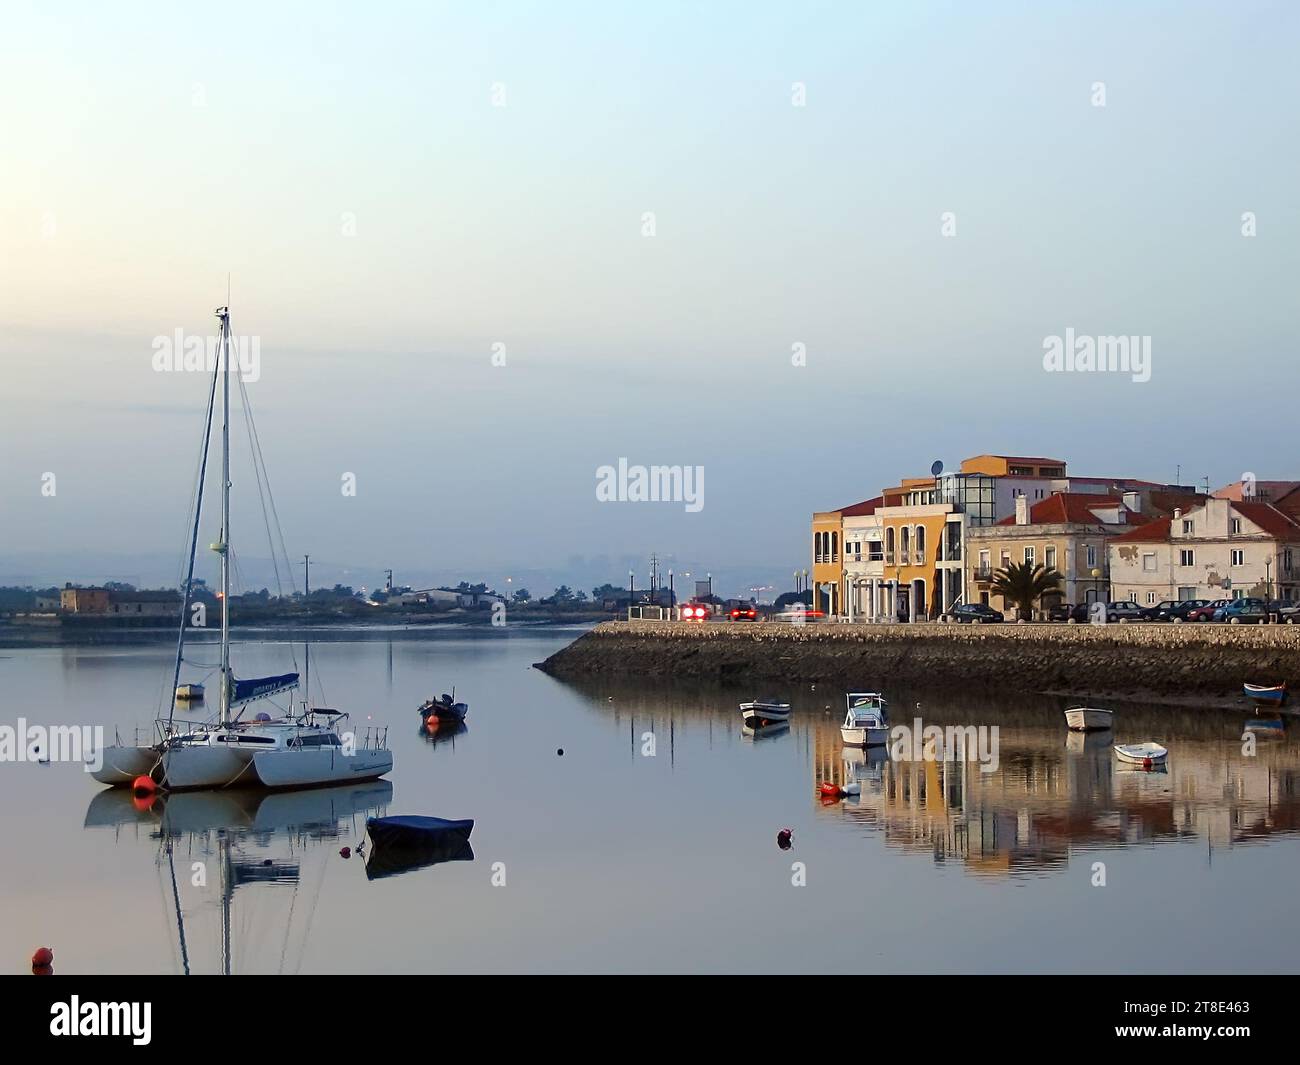 Vista della città di Seixal e della baia di Seixal con piccole barche e un trimarano a vela al crepuscolo, al tramonto o in serata. Setubal, Portogallo Foto Stock